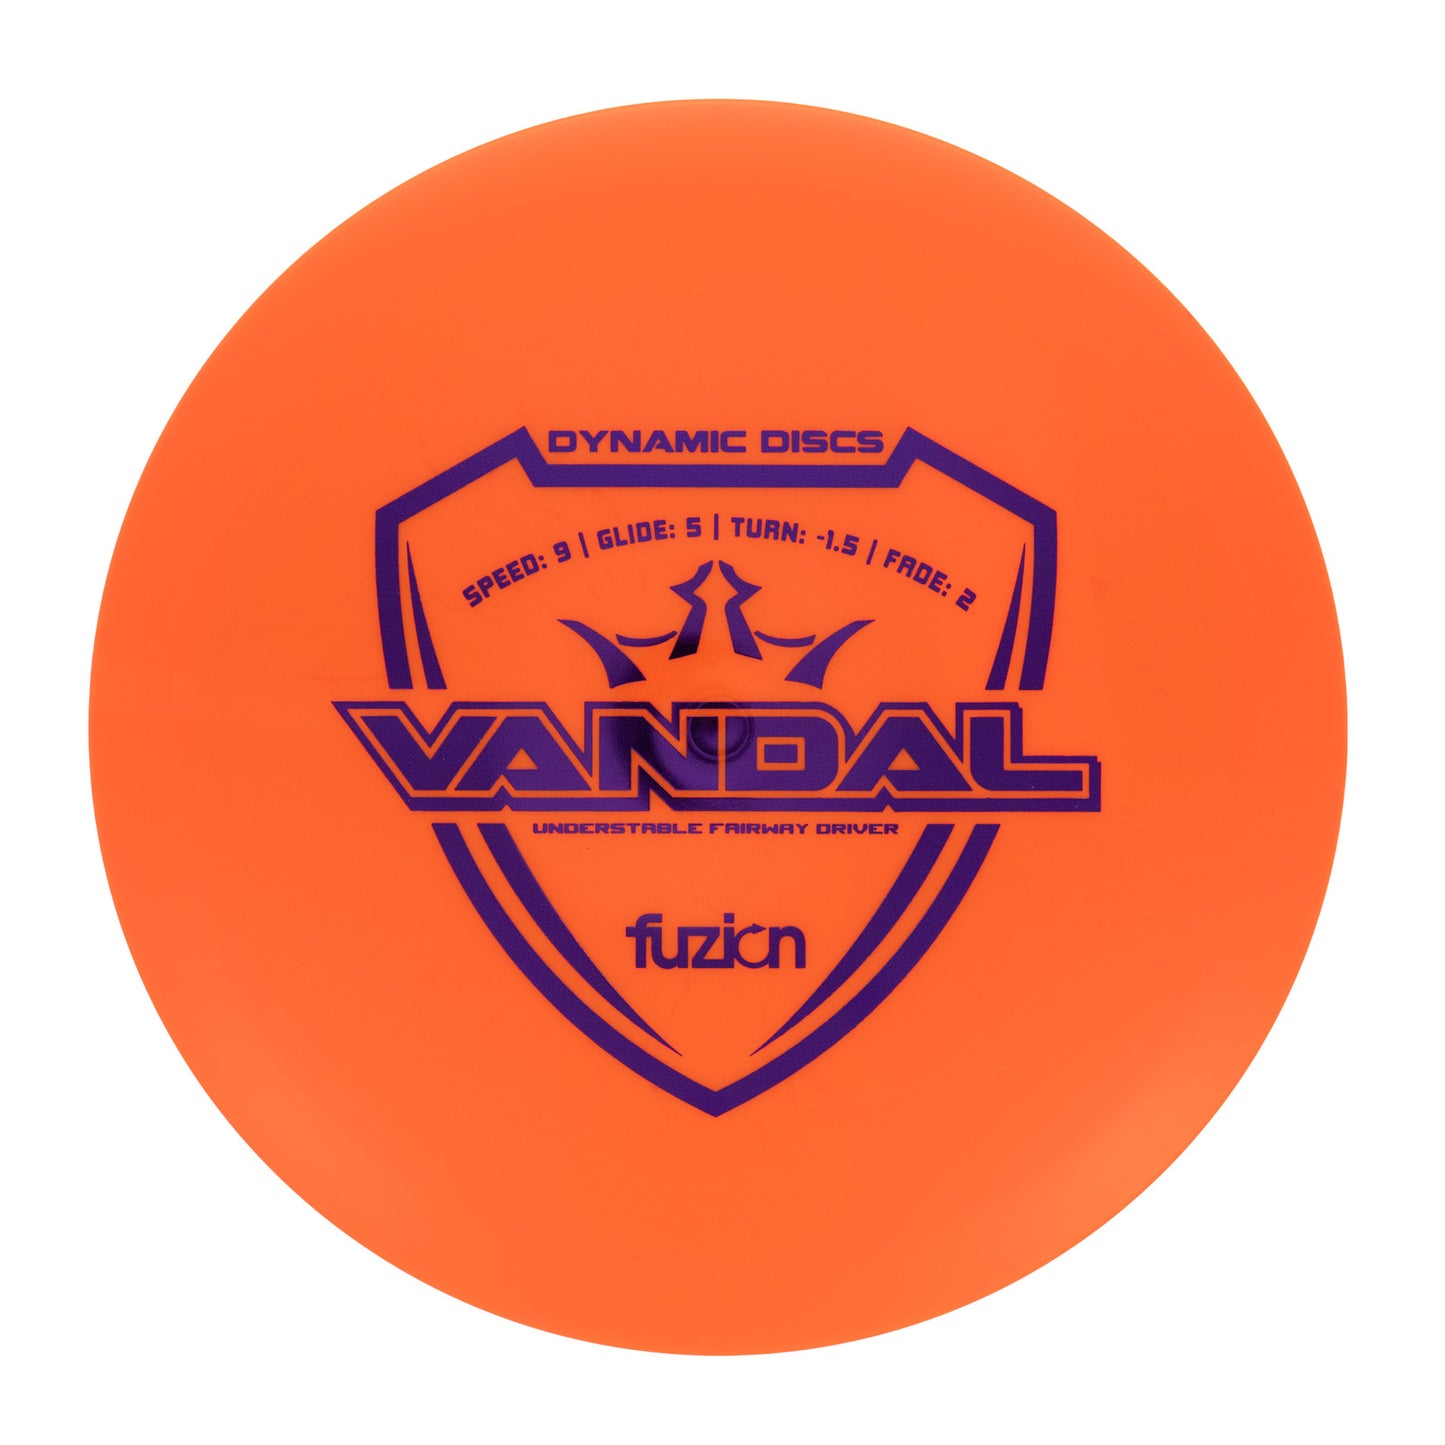 Dynamic Discs Vandal - Fuzion 173g | Style 0002